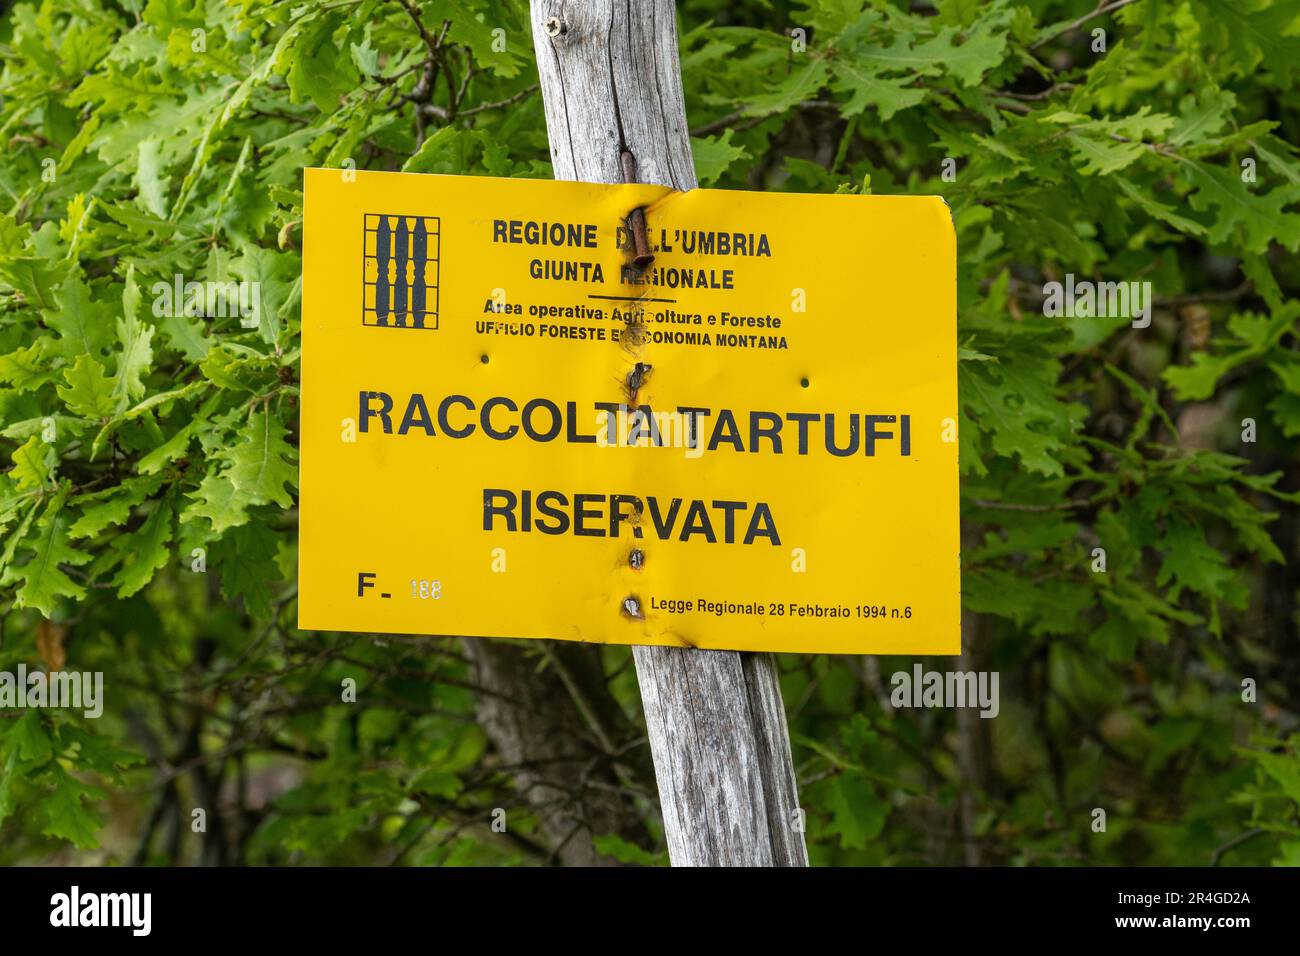 Vietato il ritiro del tartufo, firma una riserva naturale in Appennino, Umbria, Italia Centrale, Europa Foto Stock